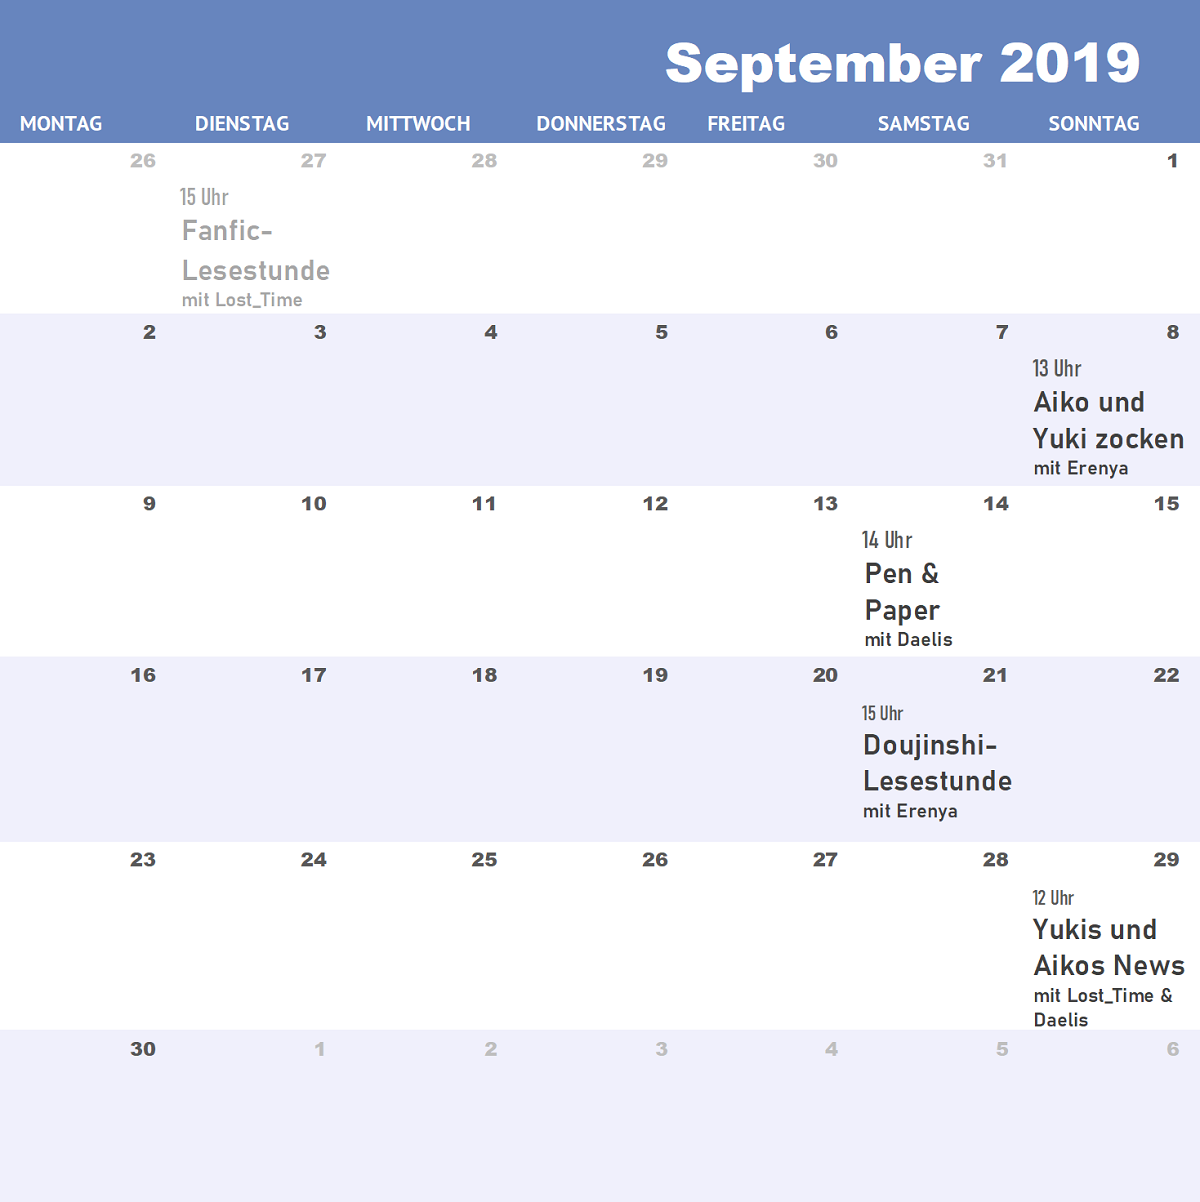 Steaming-Kalender September 2019: 8.9., 13 Uhr Aiko und Yuki zocken, 14.9., 14 Uhr Pen & Paper, 21.9. 15 Uhr Doujinshi-Lesestunde, 29.9. 12 Uhr Yukis und Aikos News